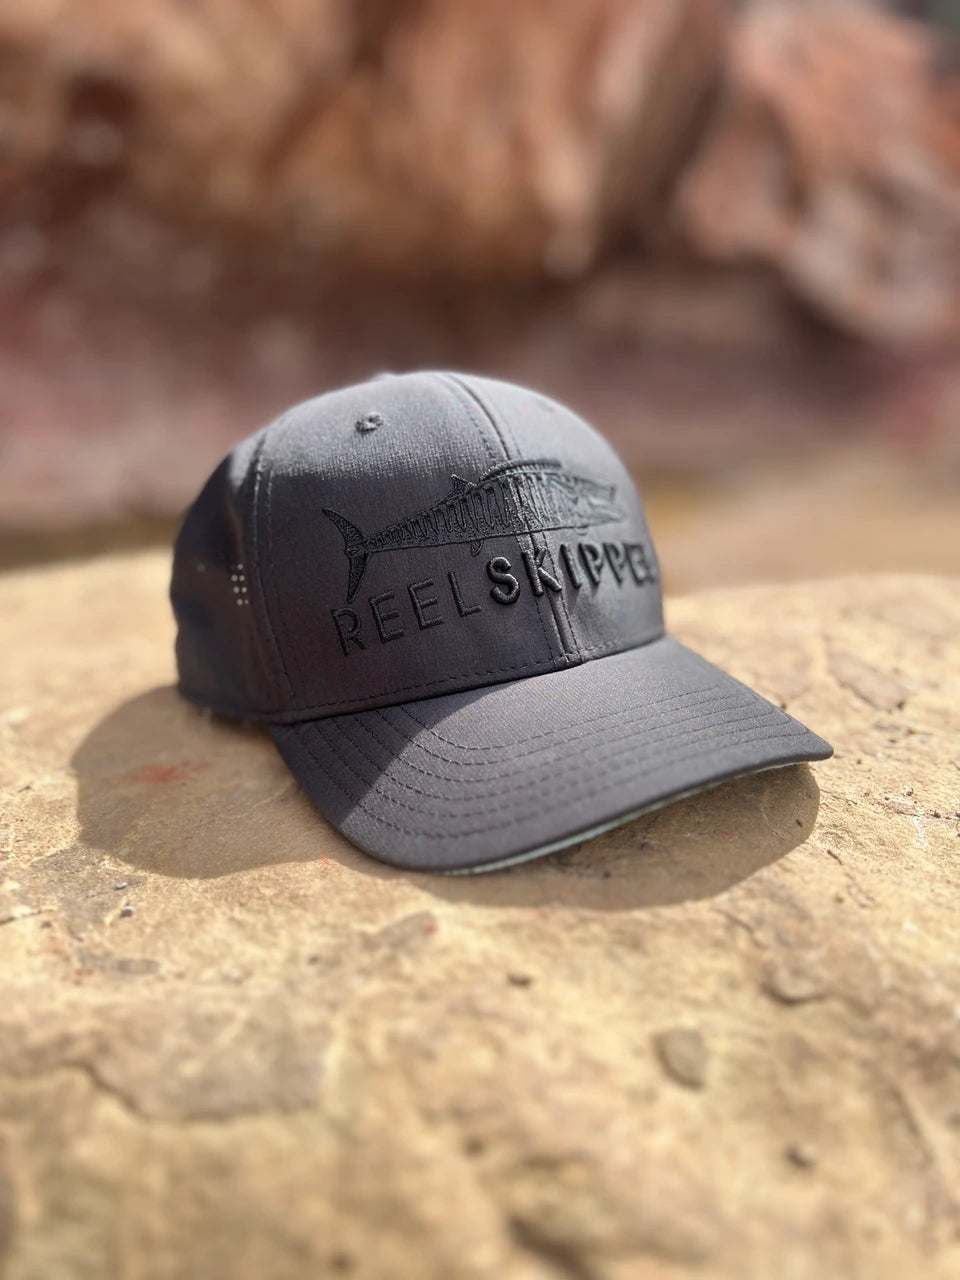 Women's Hats, Visors & Sun Masks for Fishing, Diving & SUP – Reel Skipper